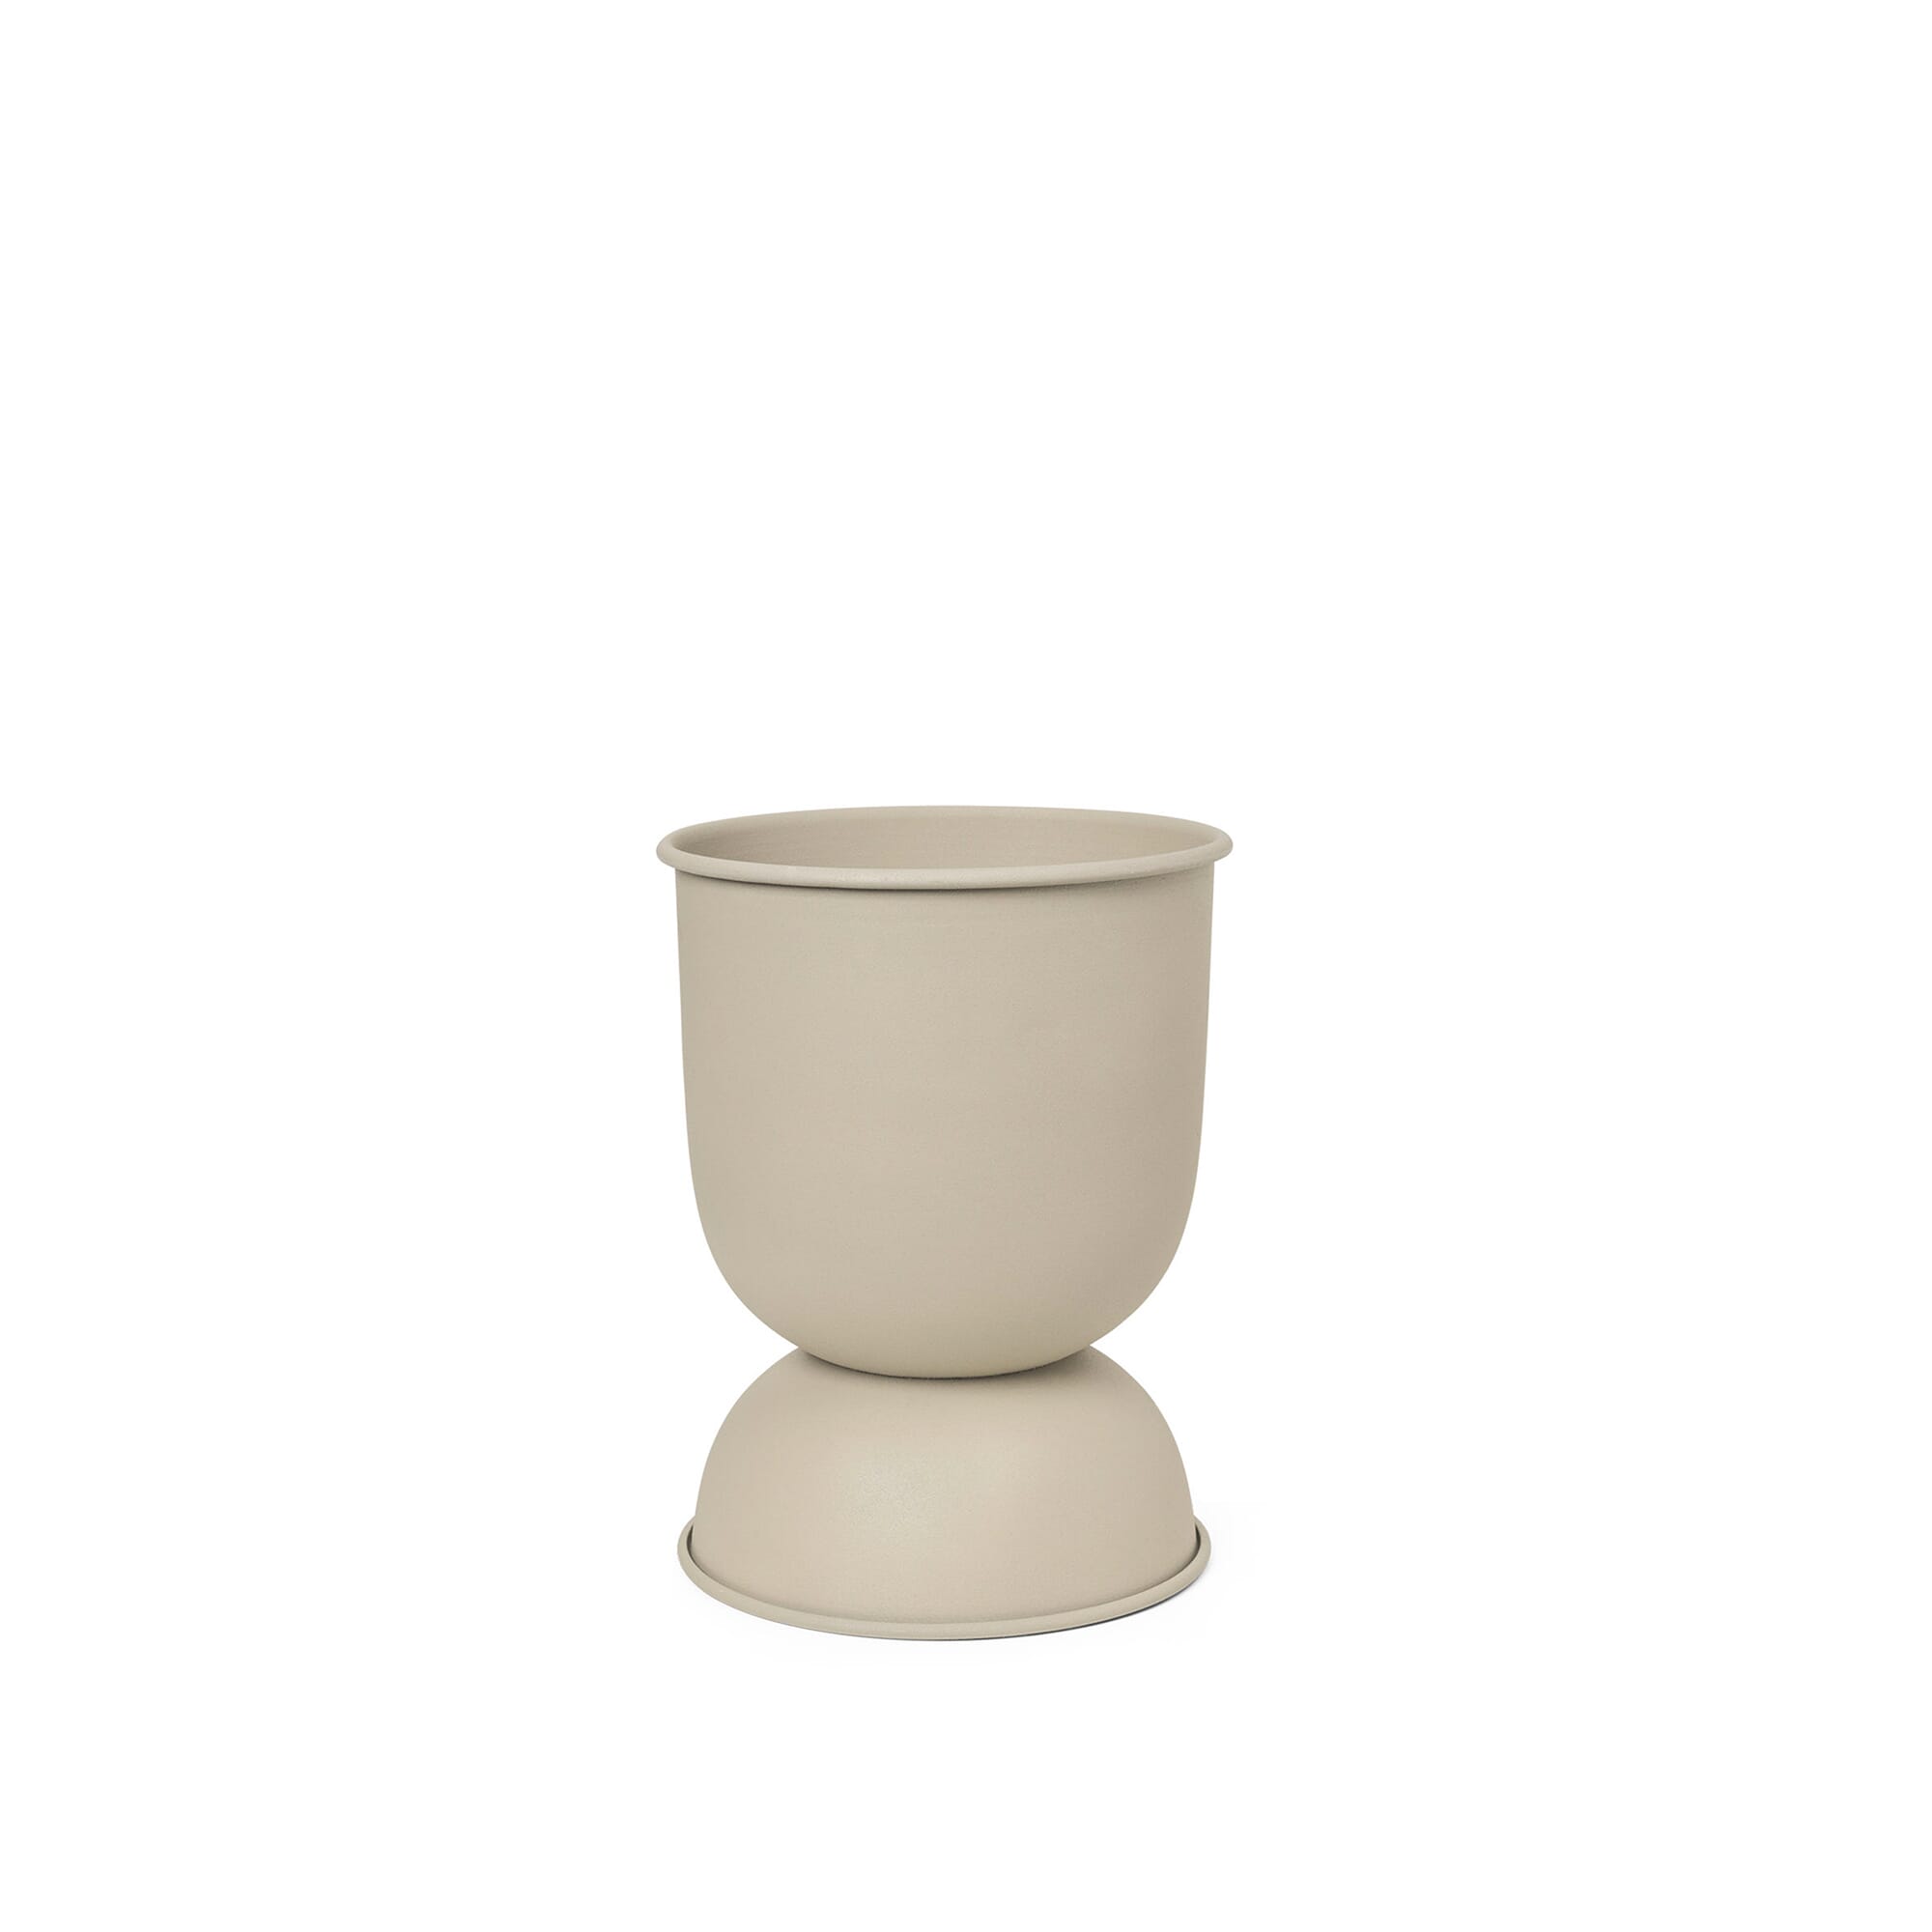 Bilde av Ferm Living - Ferm Living Hourglass Pot Cashmere X-small - Lunehjem.no - Interiør På Nett